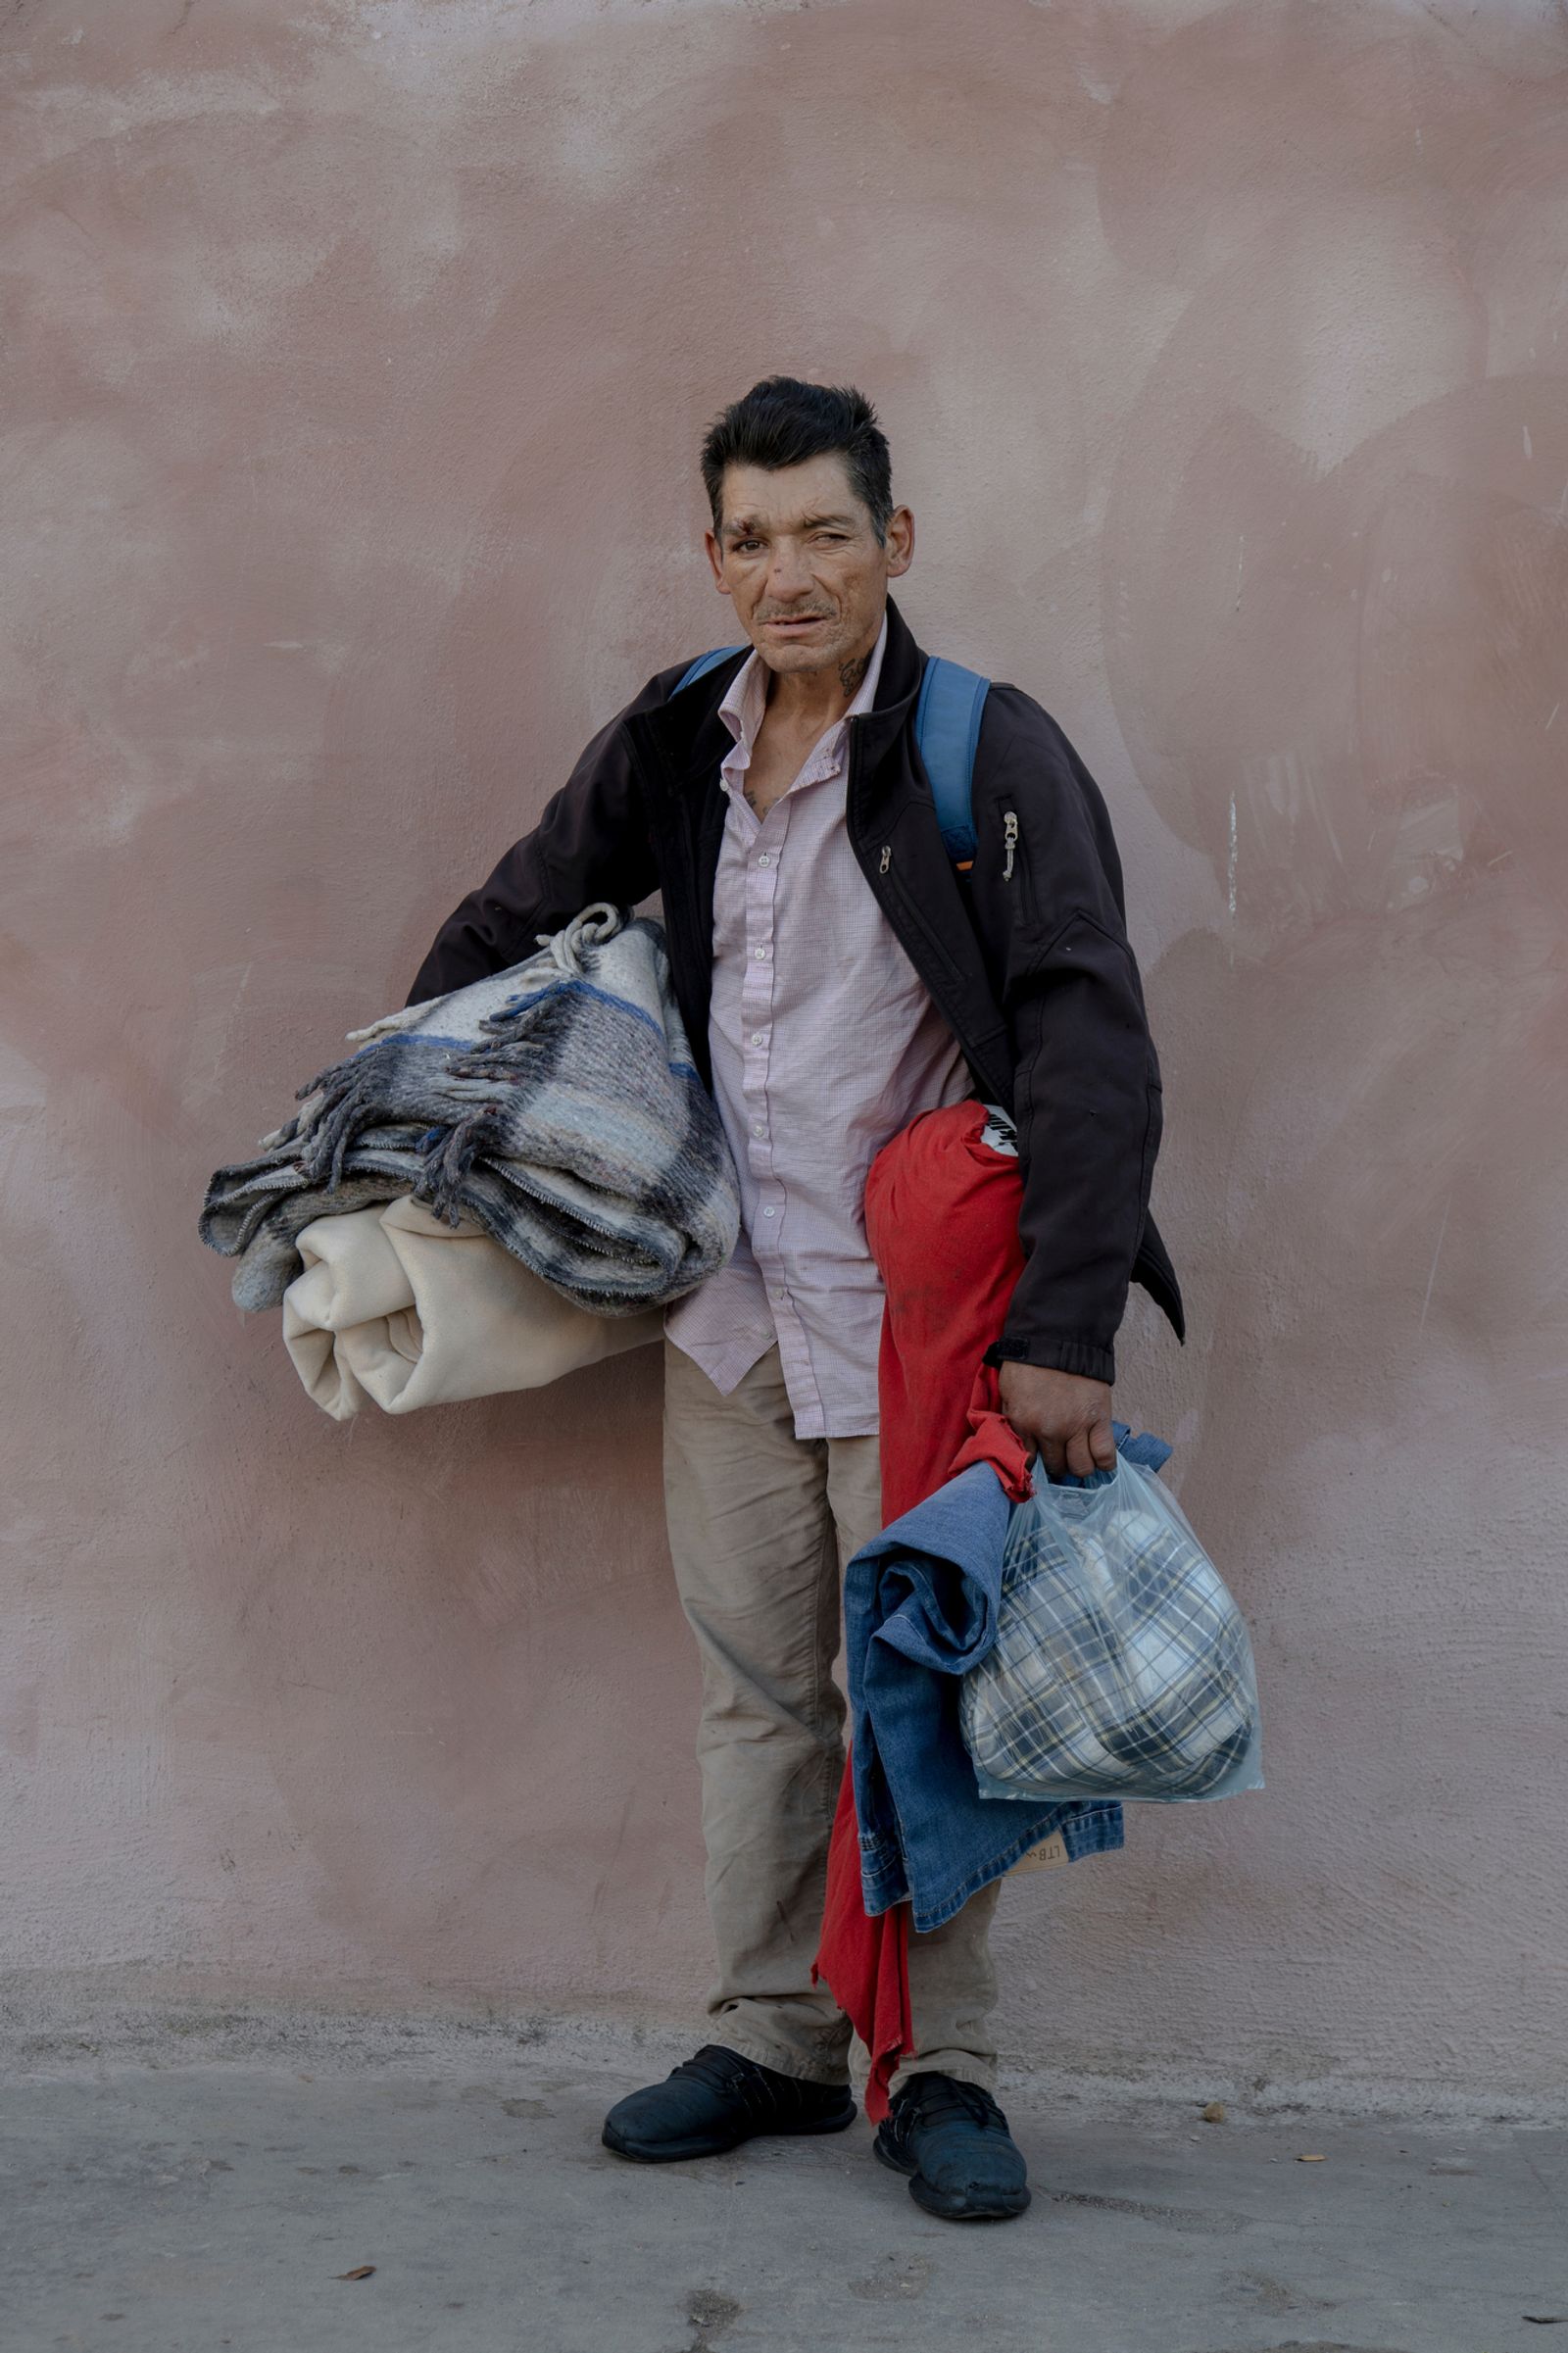 © Kitra Cahana - Image from the Caravana Migrante photography project